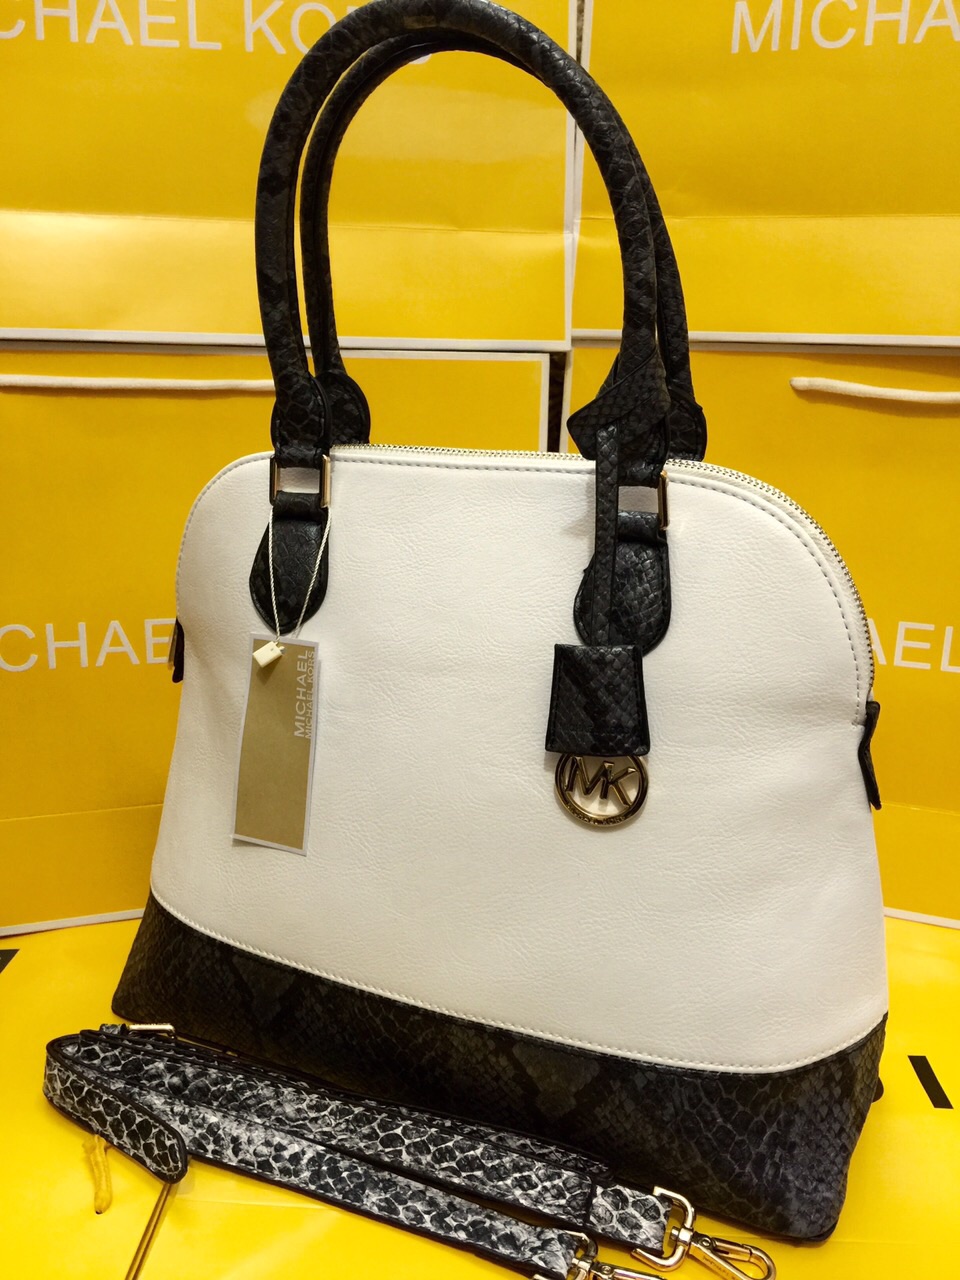 Buy Michael Kors MK Signature Jet Set Grab Shoulder Bag Handbag Tote Purse  at Amazon.in